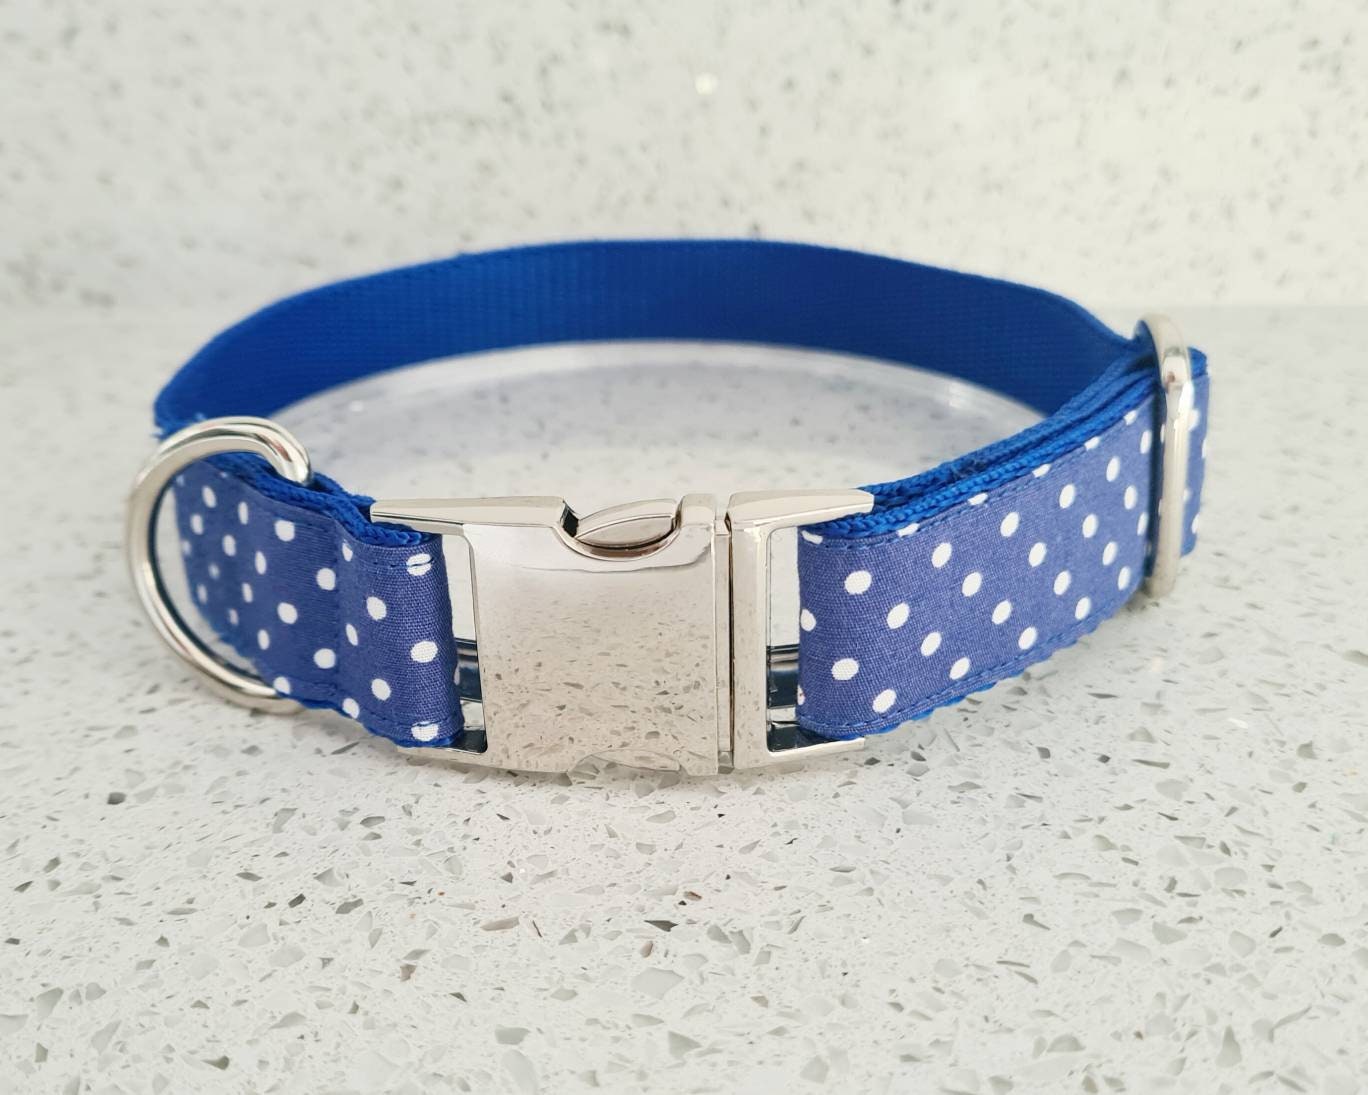 Blue polka dot dog collar